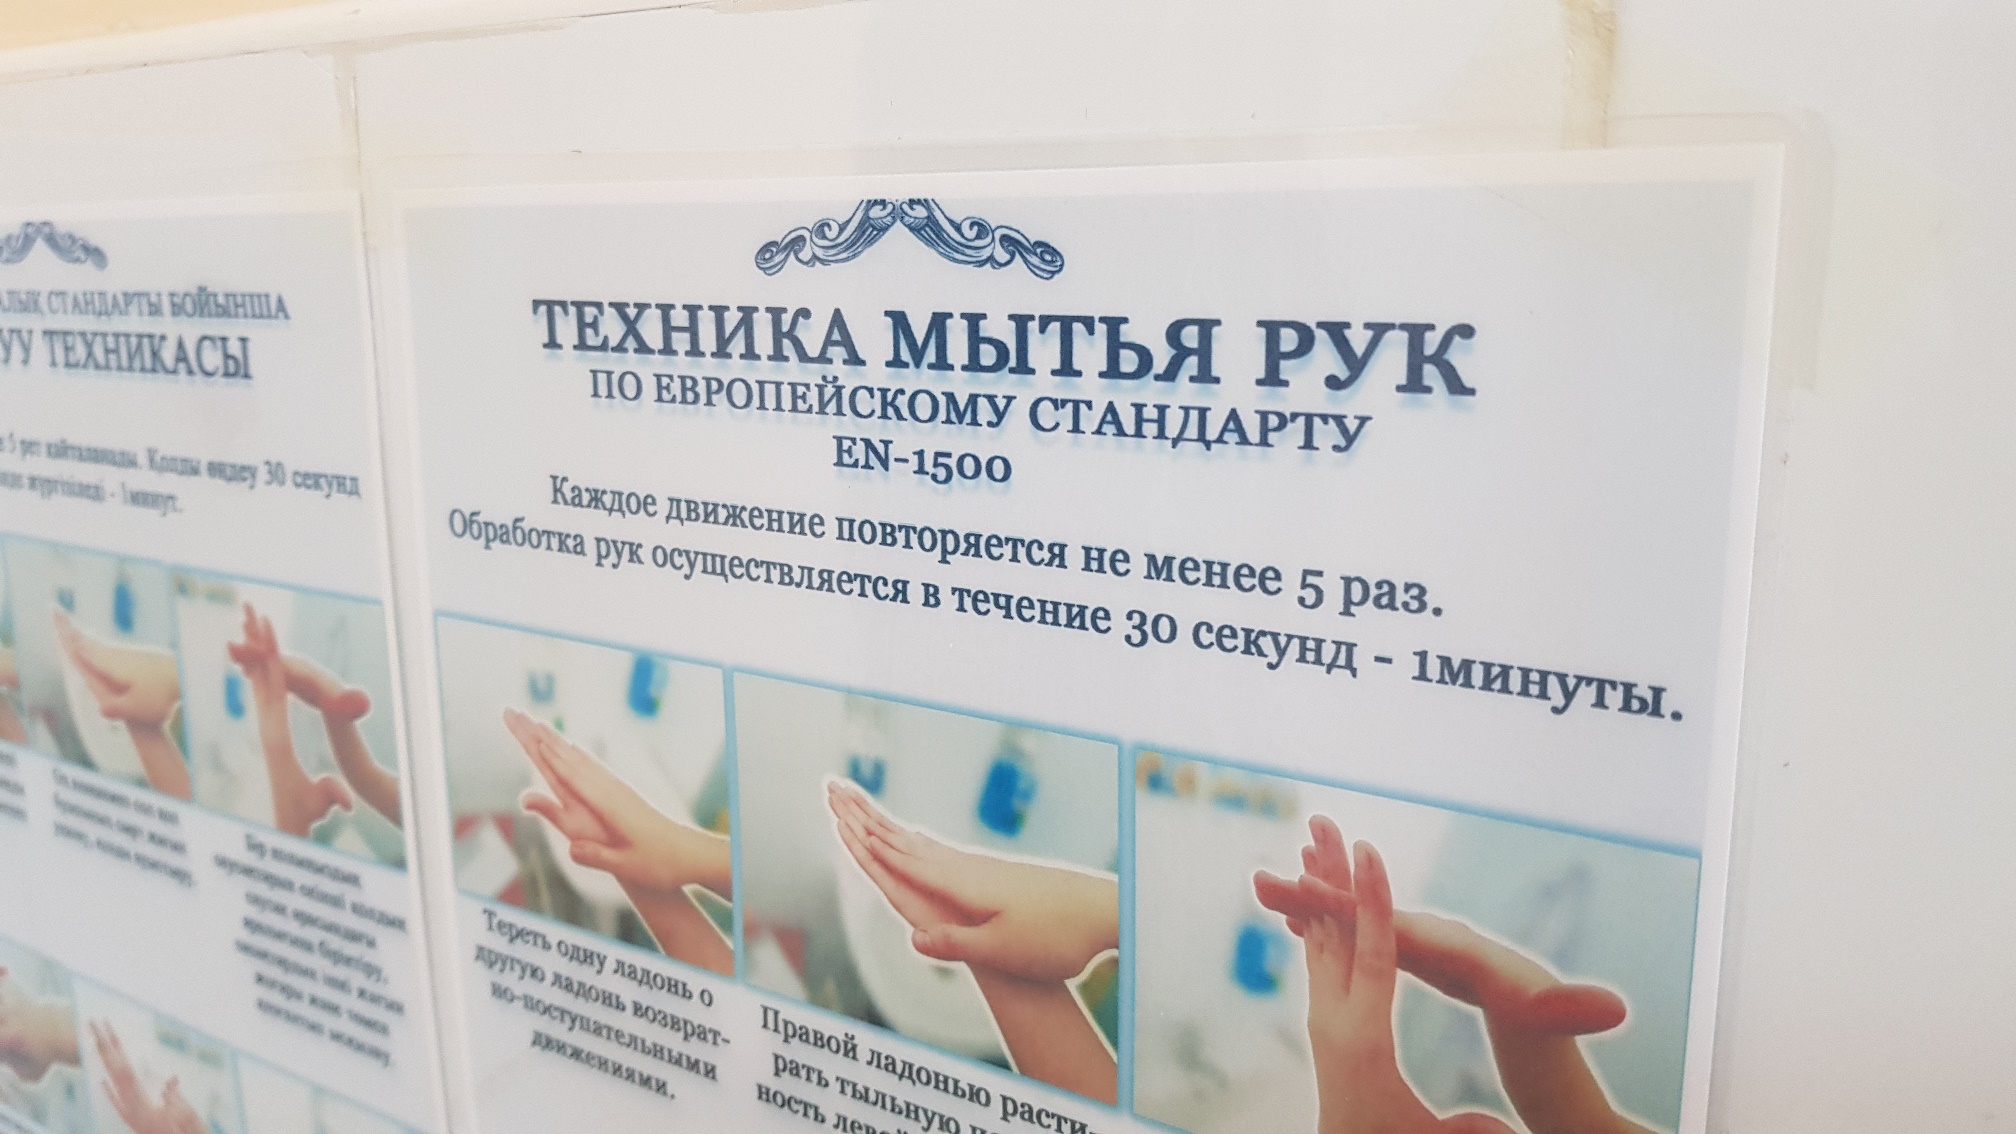 Приказ мытья рук. Европейский стандарт мытья рук en-1500. 111 Приказ МЗ РК мытье рук. Техника обработки рук Европейский стандарт en-1500. Гигиеническая обработка рук Ен 1500.